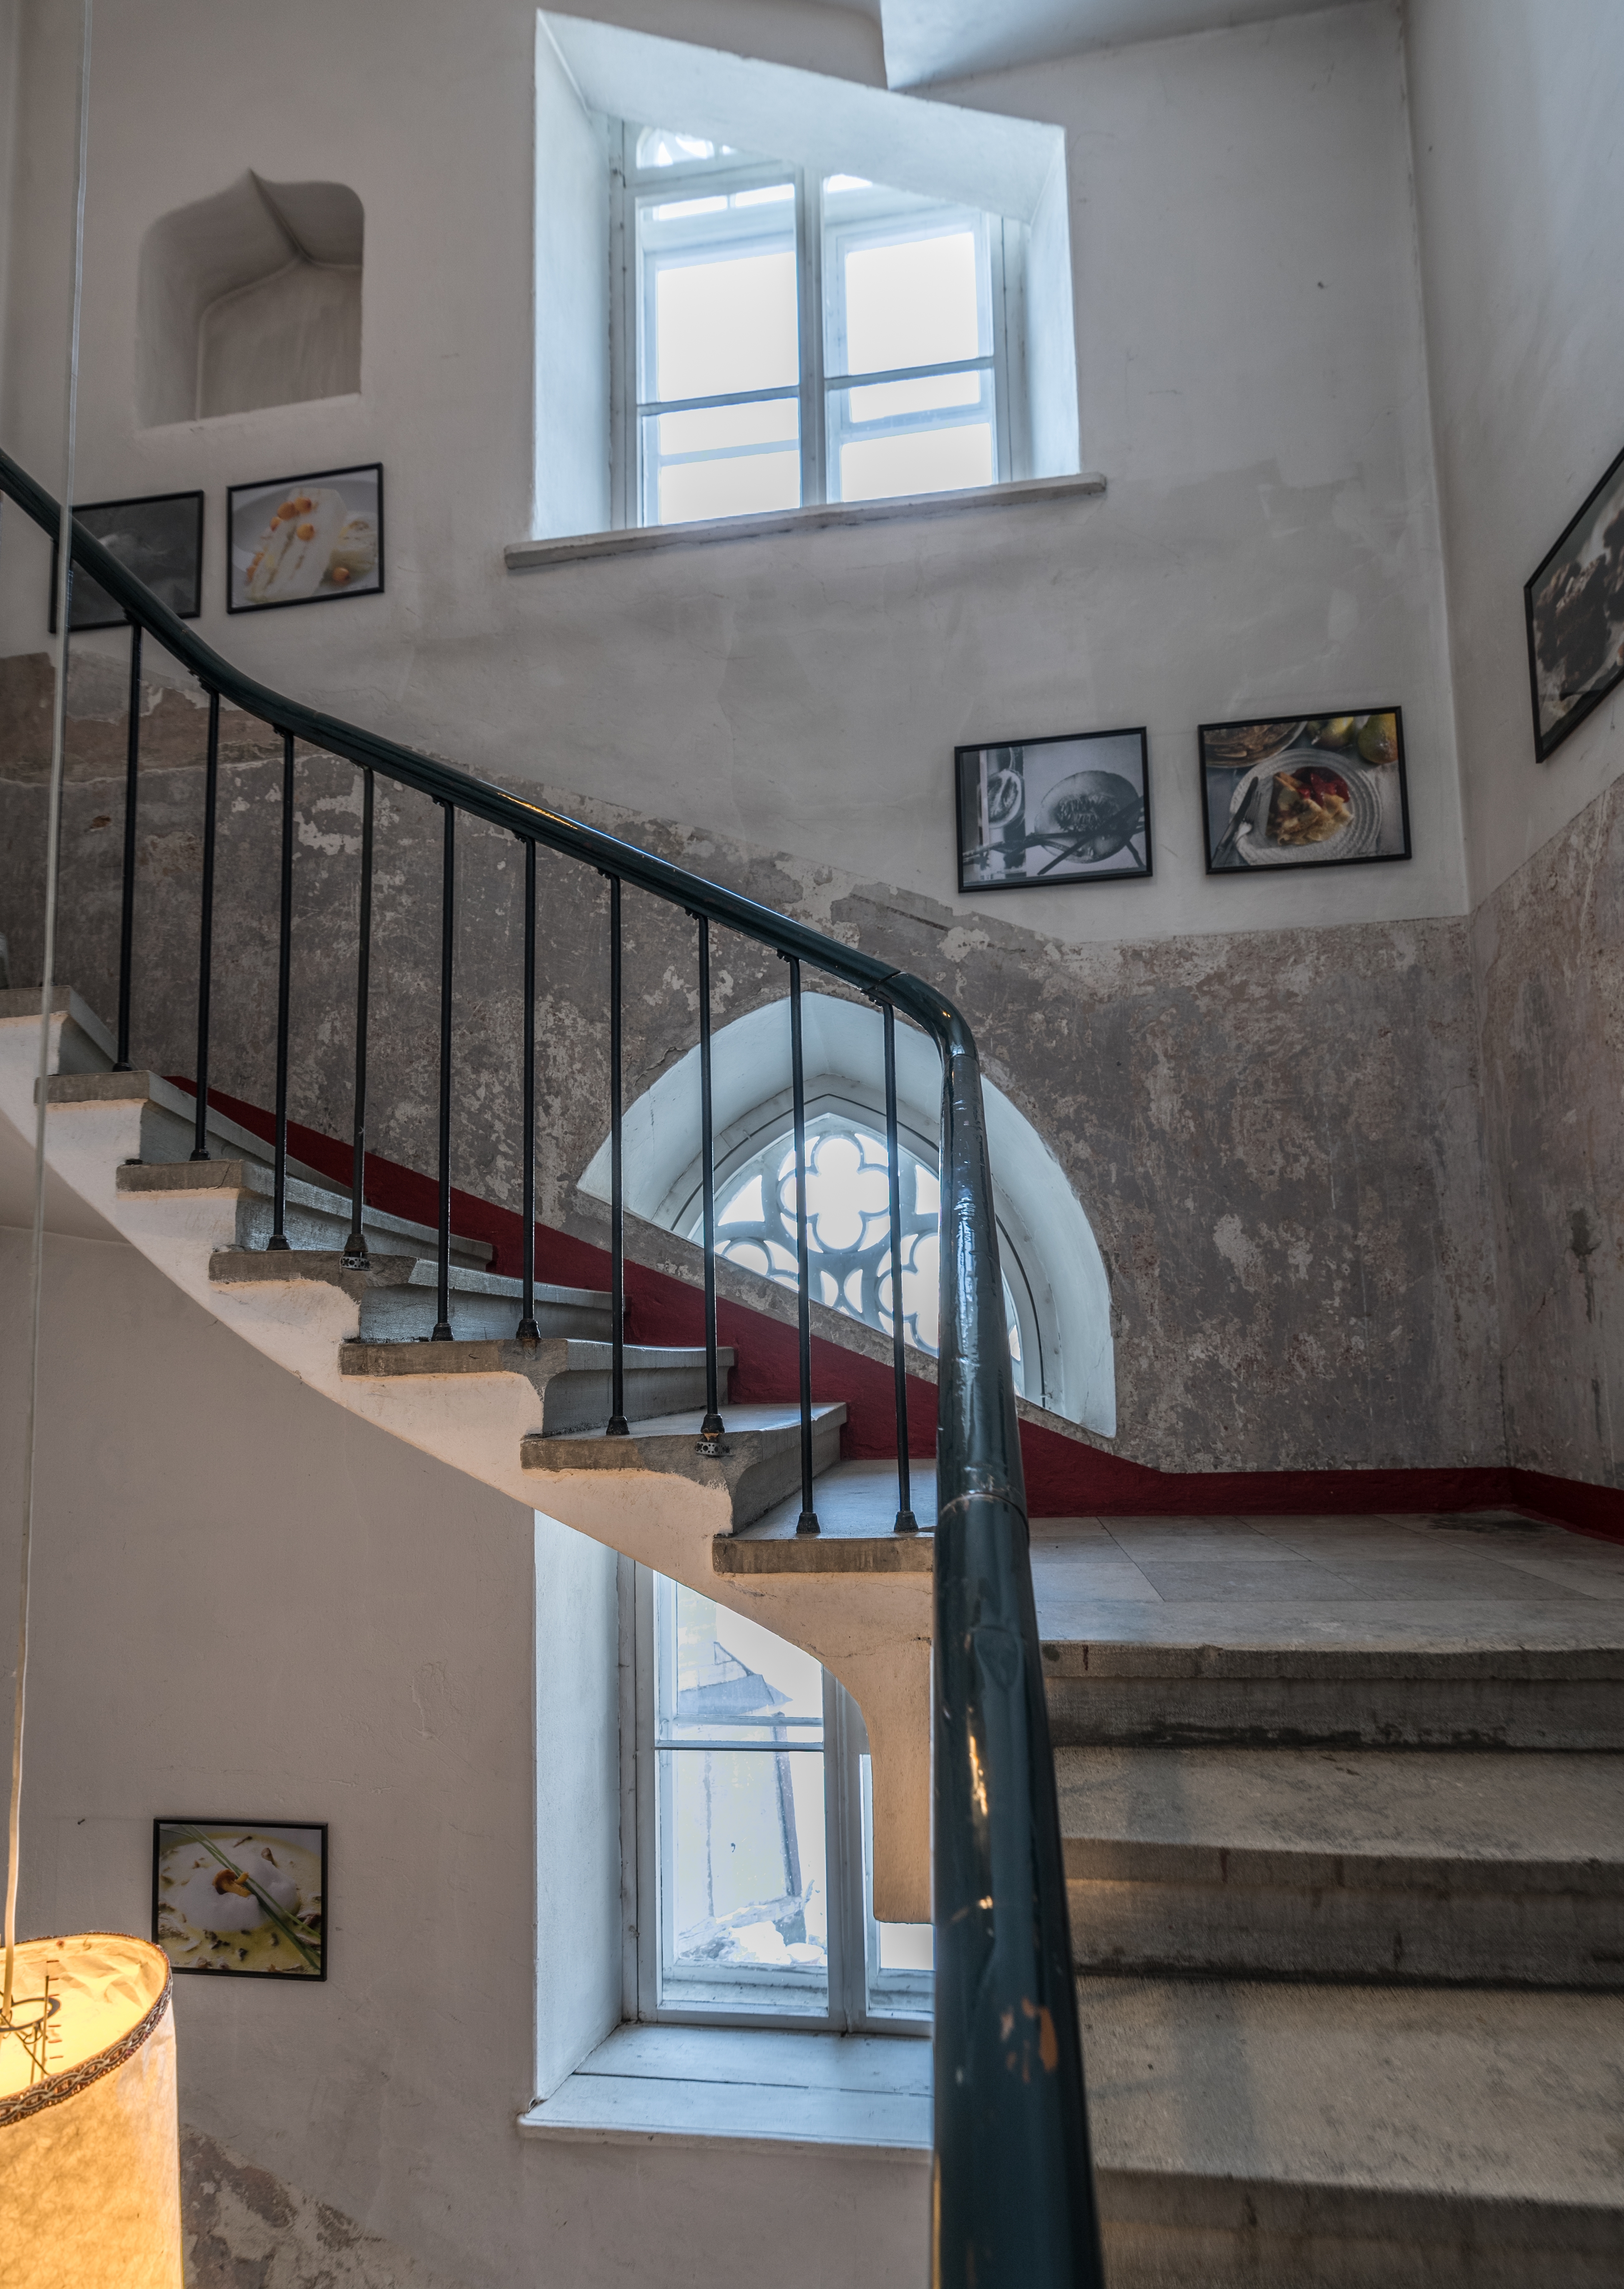 Fotos, die an den Wänden eines Treppenhauses hängen | Quelle: Shutterstock